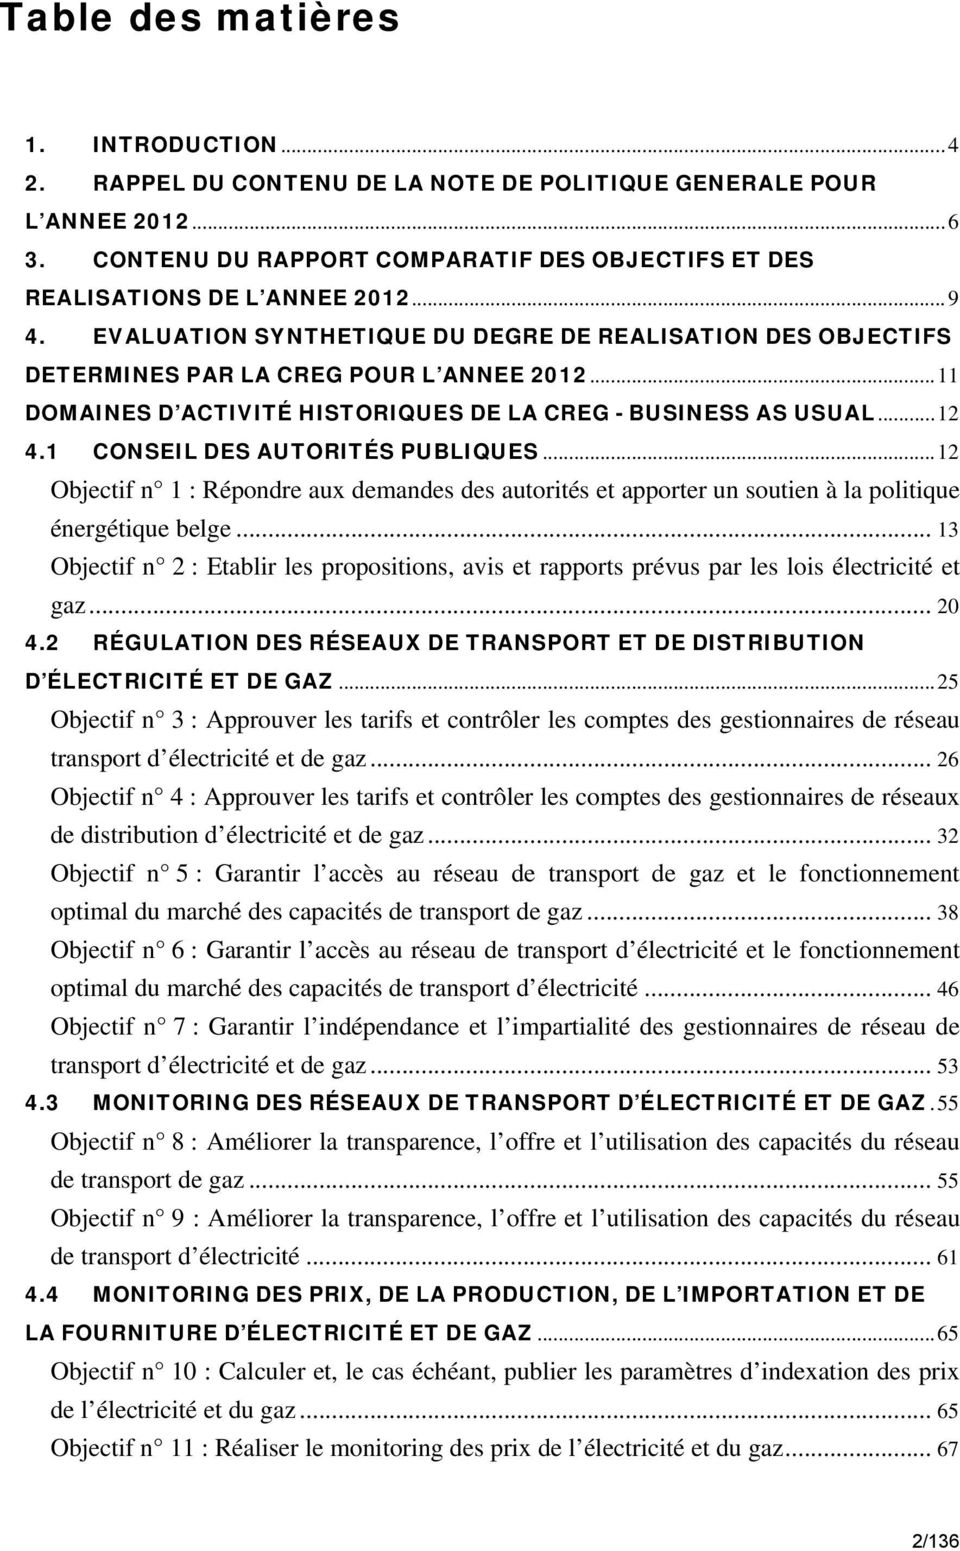 1 CONSEIL DES AUTORITÉS PUBLIQUES... 12 Objectif n 1 : Répondre aux demandes des autorités et apporter un soutien à la politique énergétique belge.